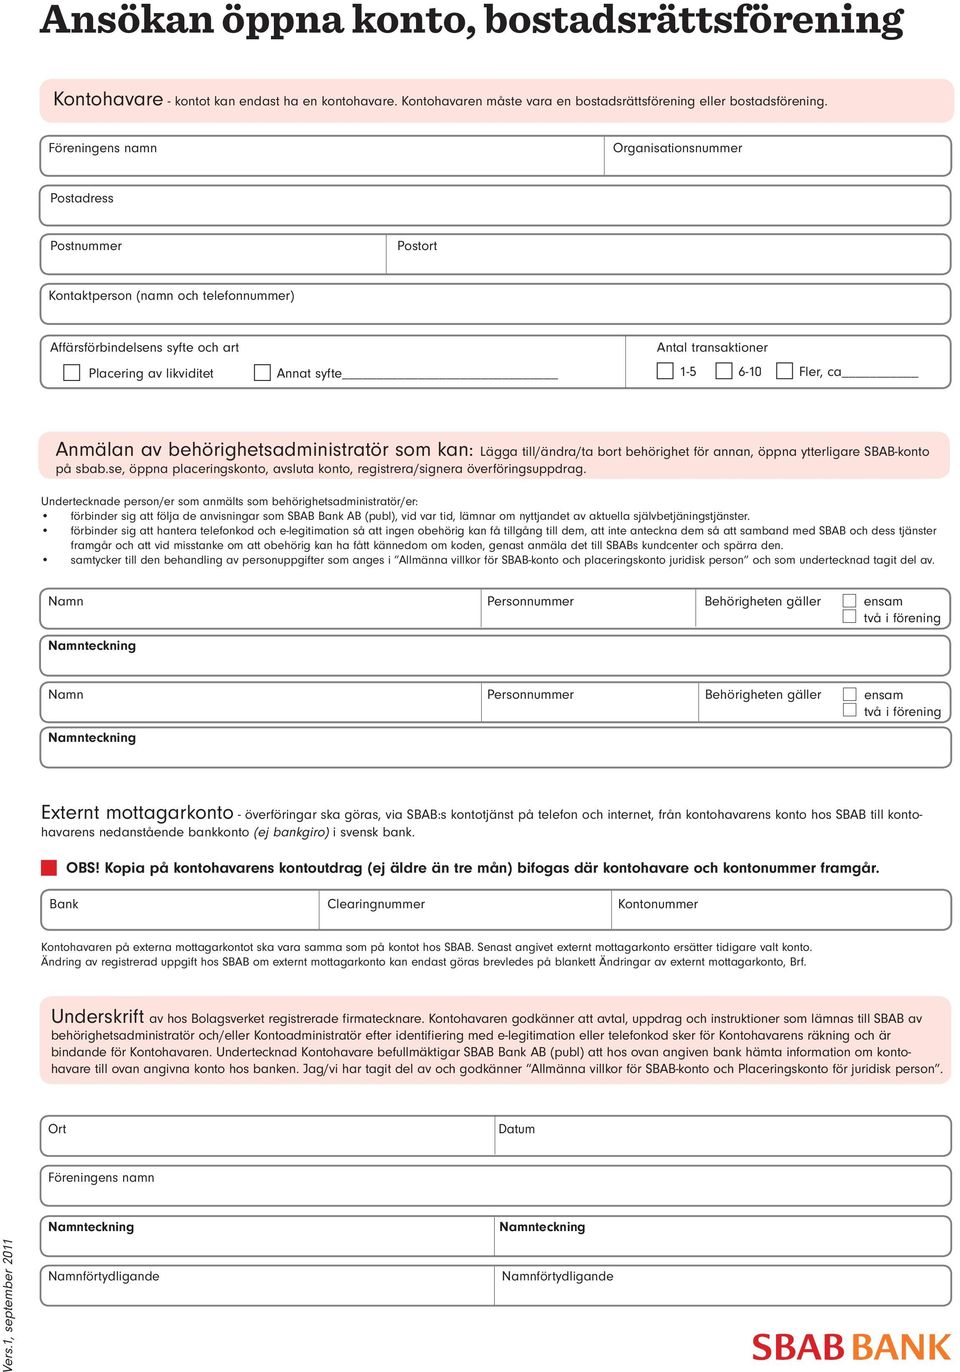 Ansökan öppna konto, bostadsrättsförening - PDF Gratis nedladdning